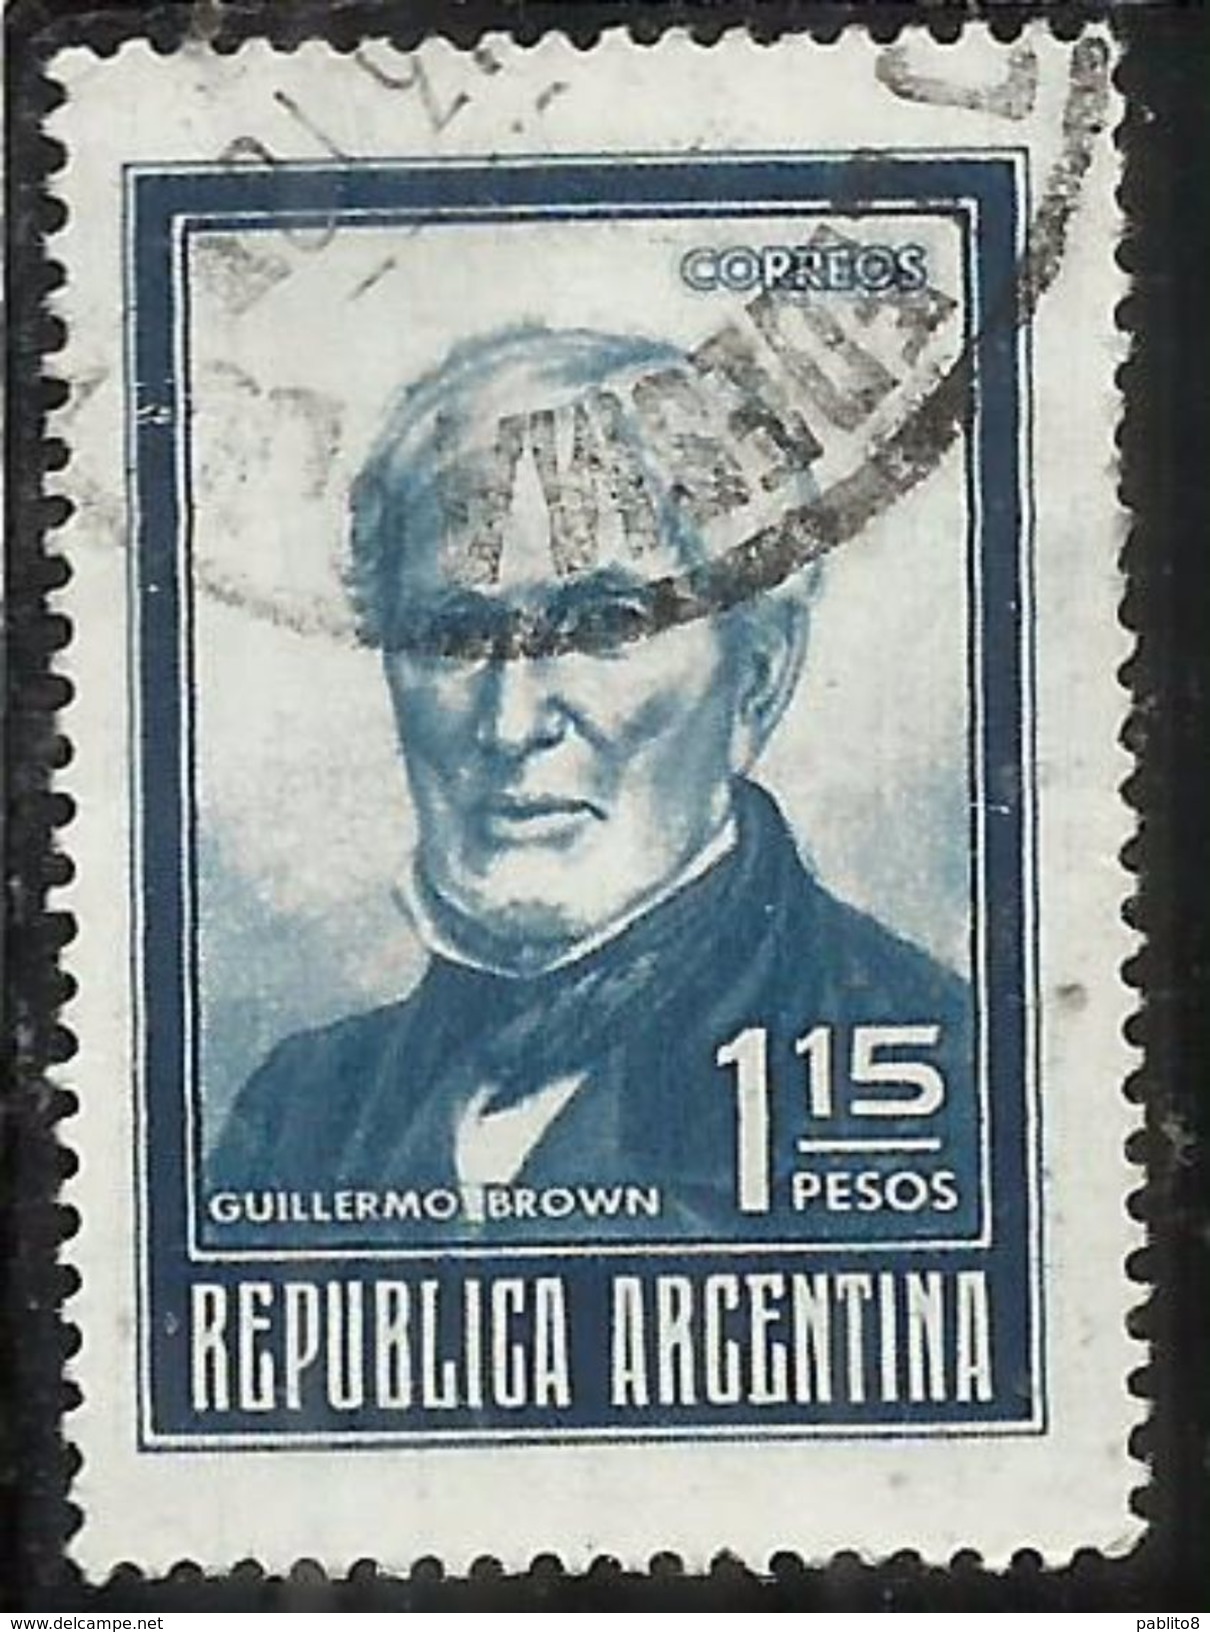 ARGENTINA 1970 1973 1971 GUILLERMO BROWN 1.15p USATO USED OBLITERE' - Usati